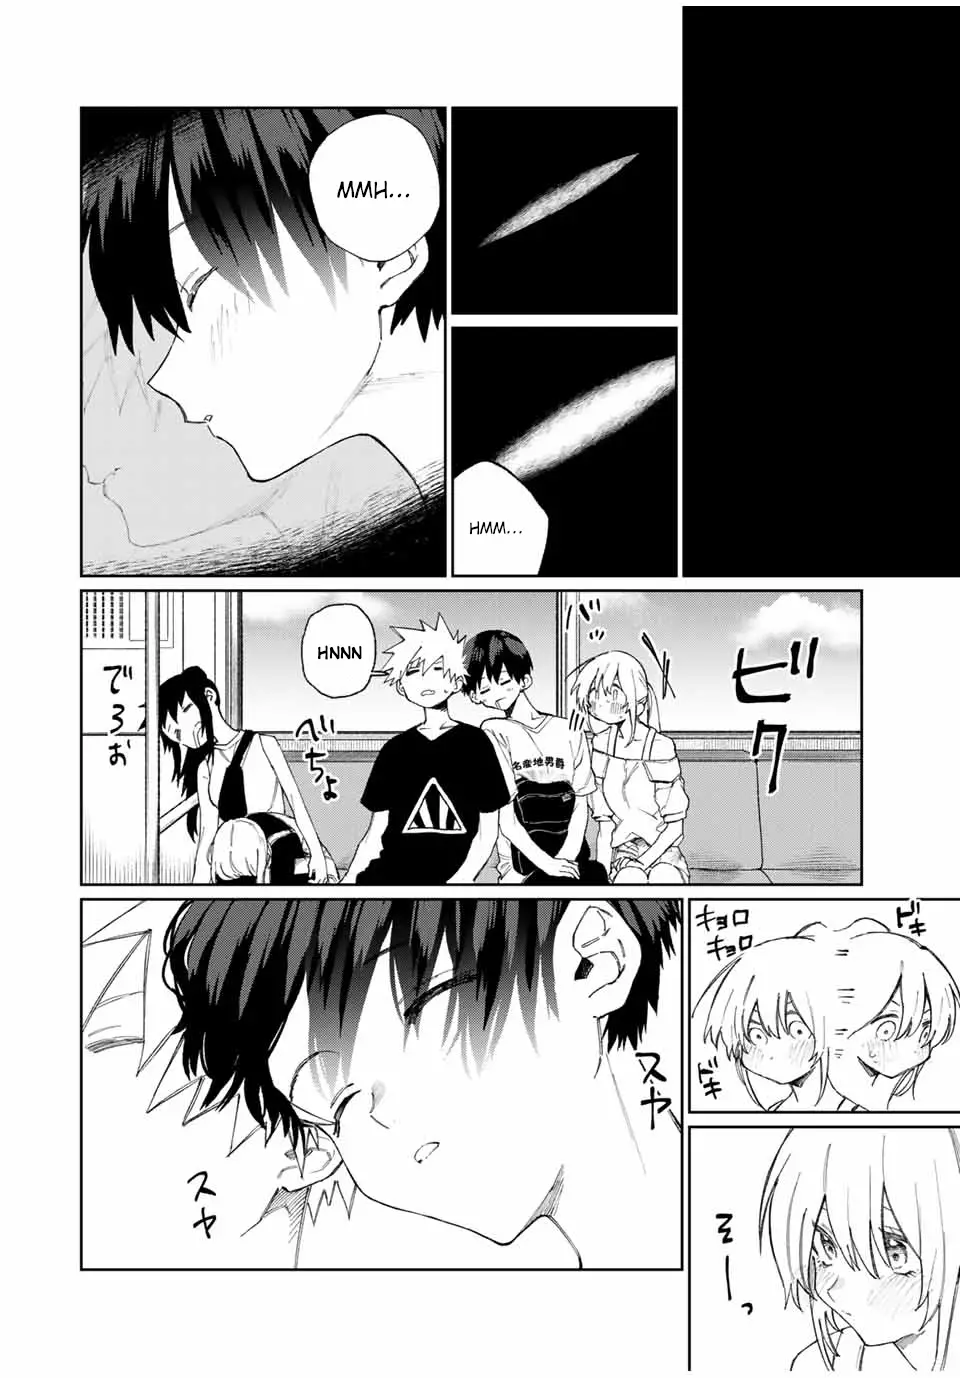 Shikimori's Not Just A Cutie - 31 page 7